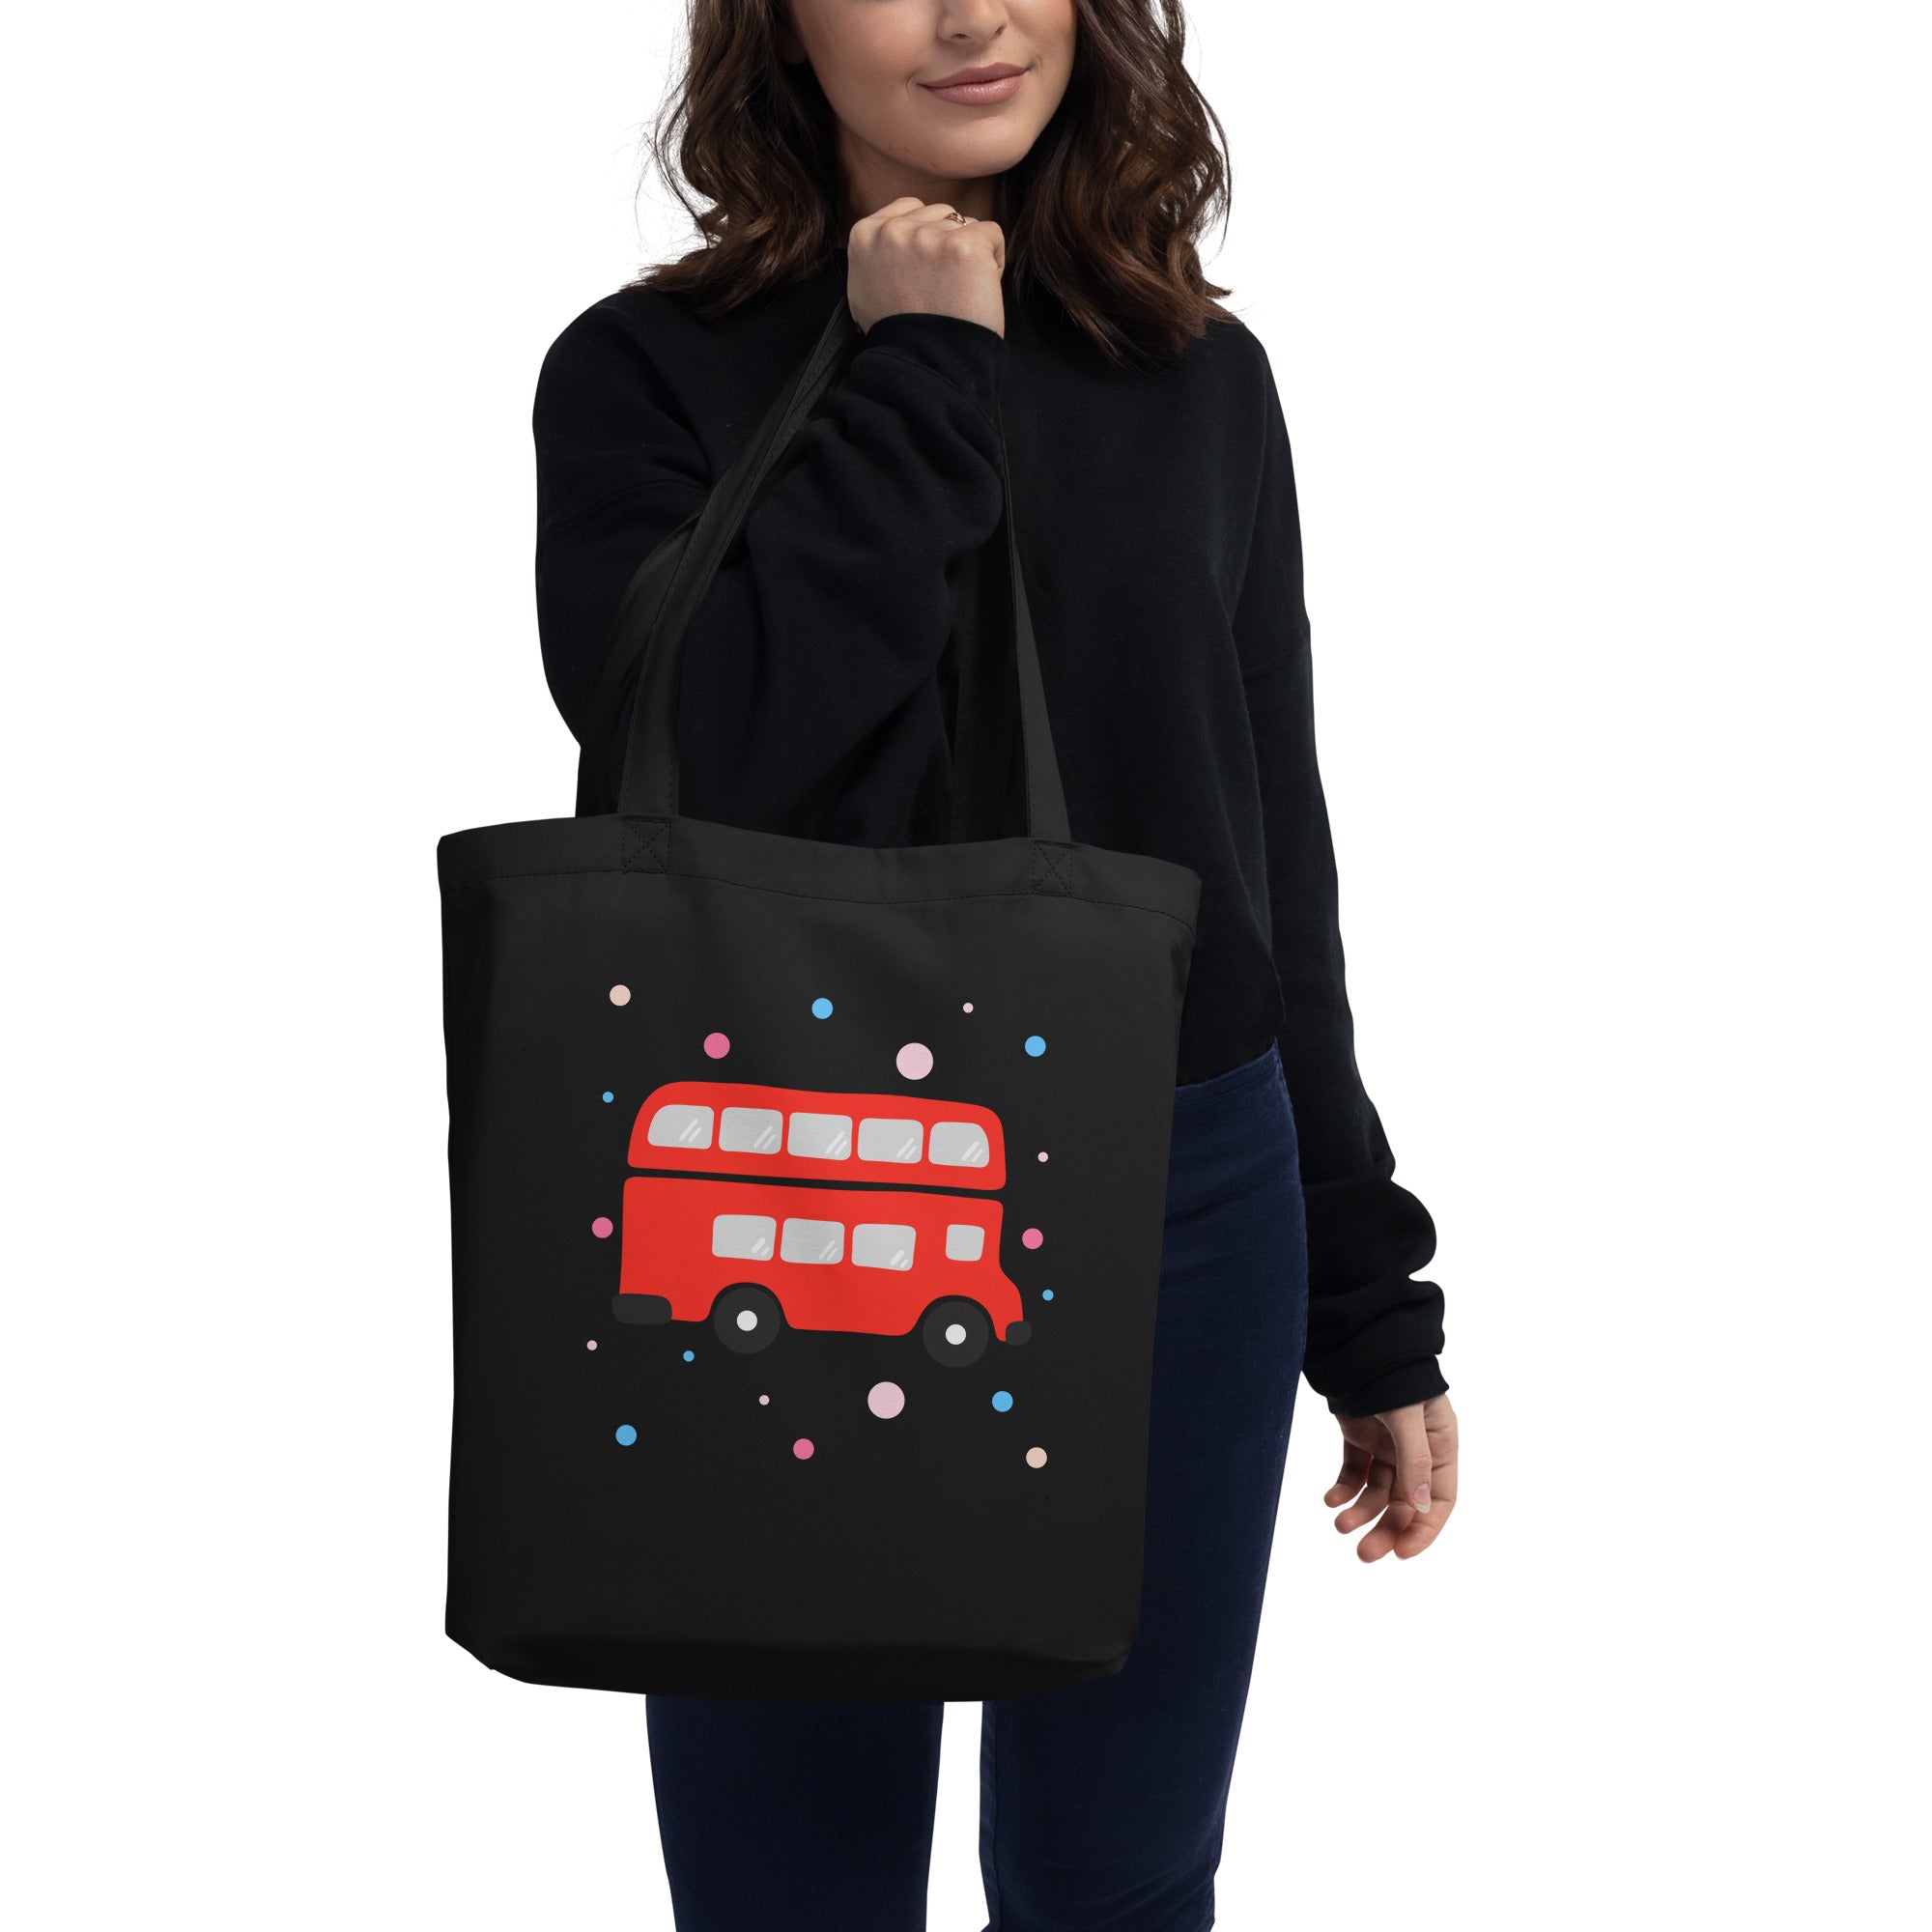 London Doodles - Bus - Eco Tote Bag